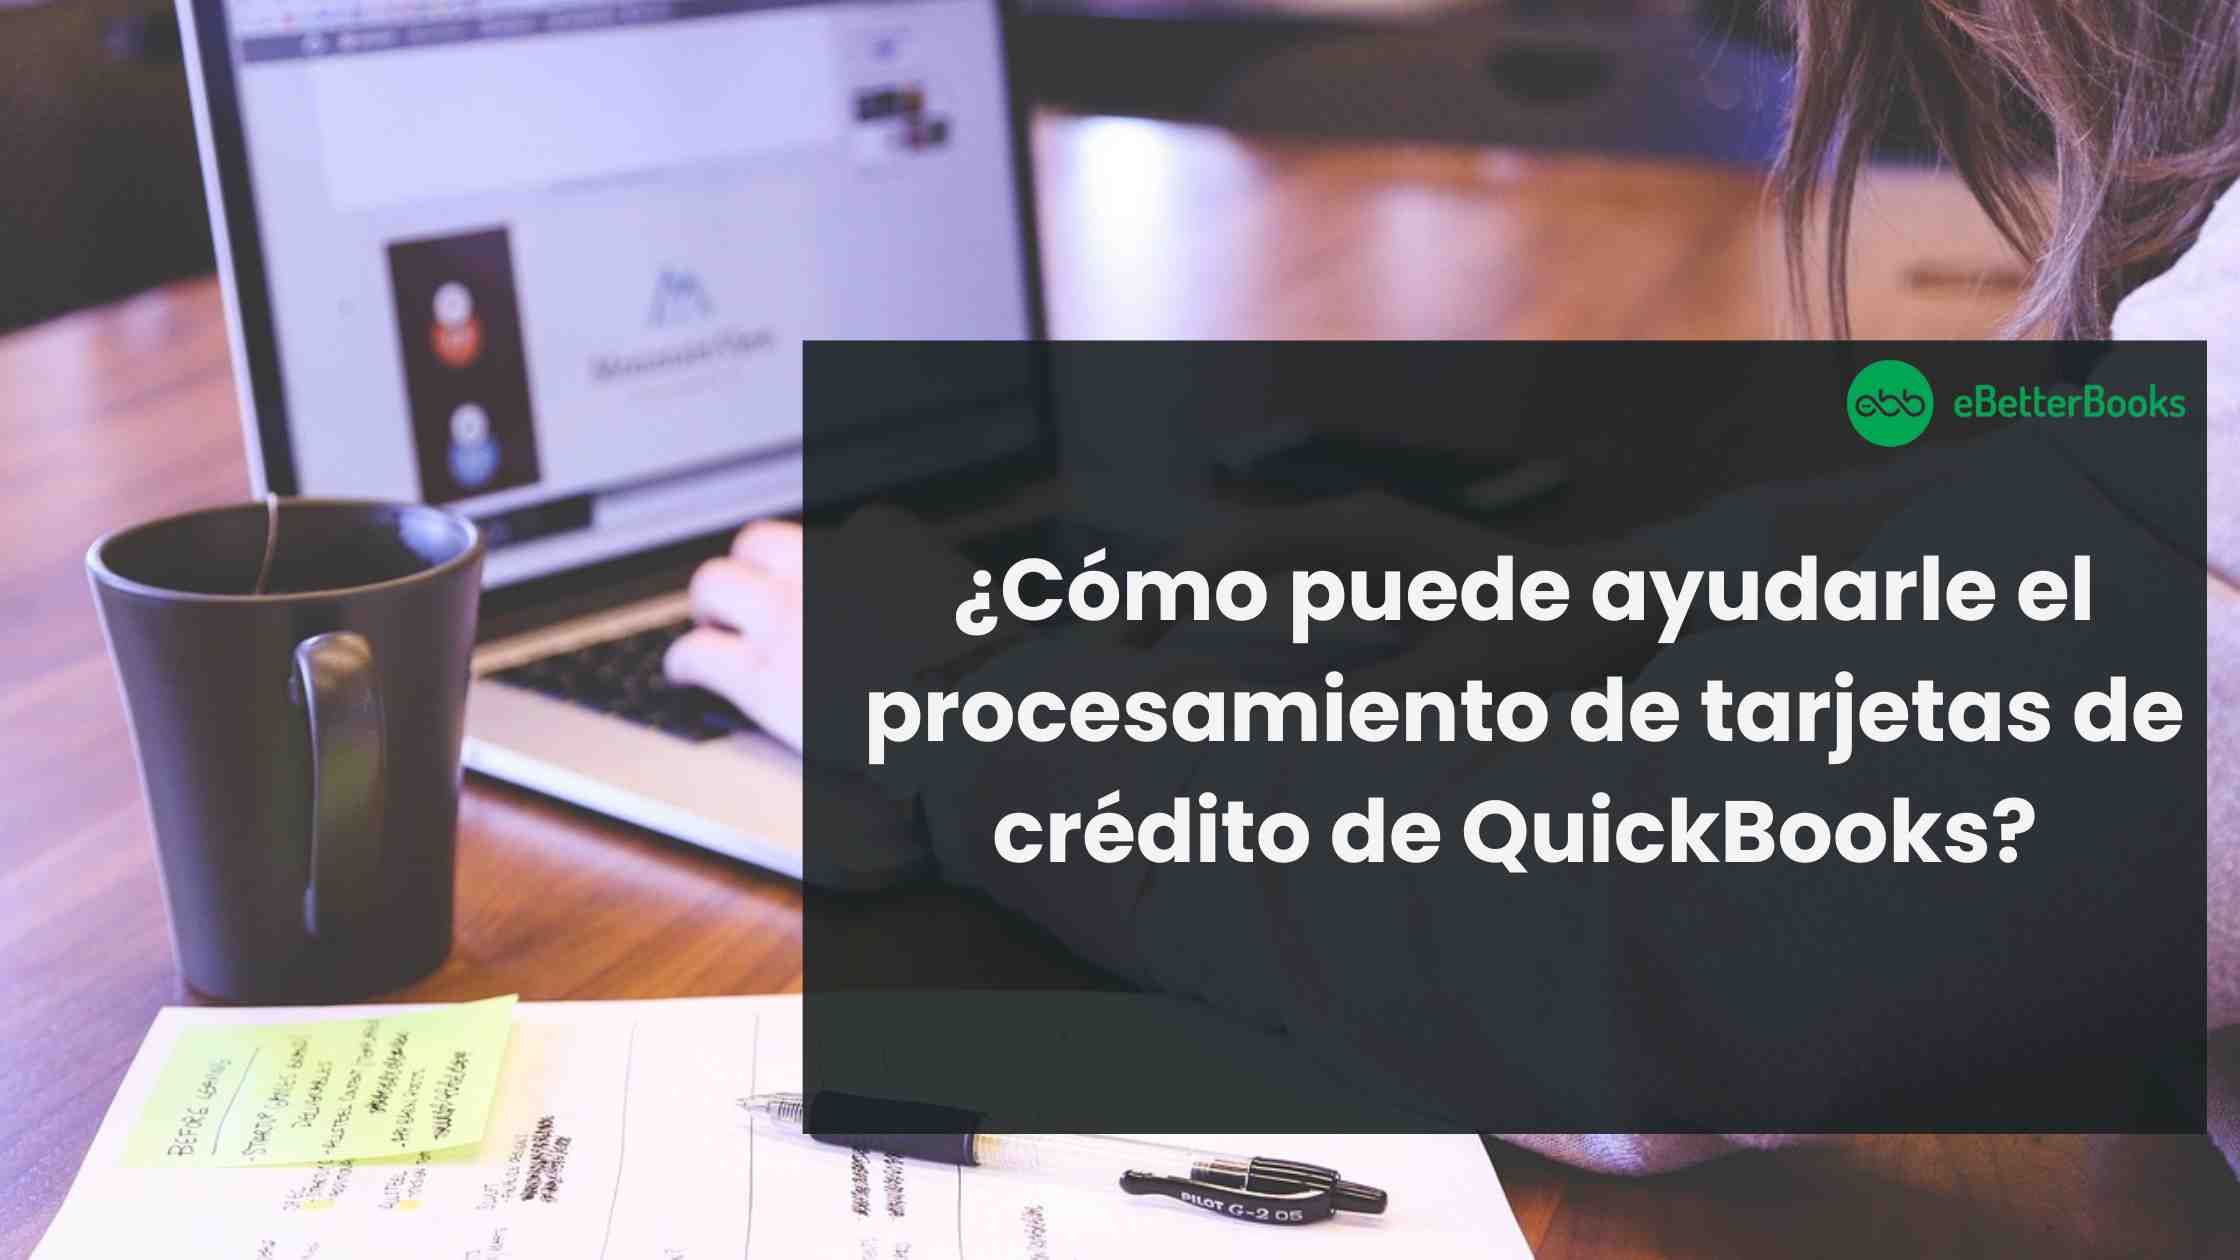 ¿Cómo puede ayudarle el procesamiento de tarjetas de crédito de QuickBooks?